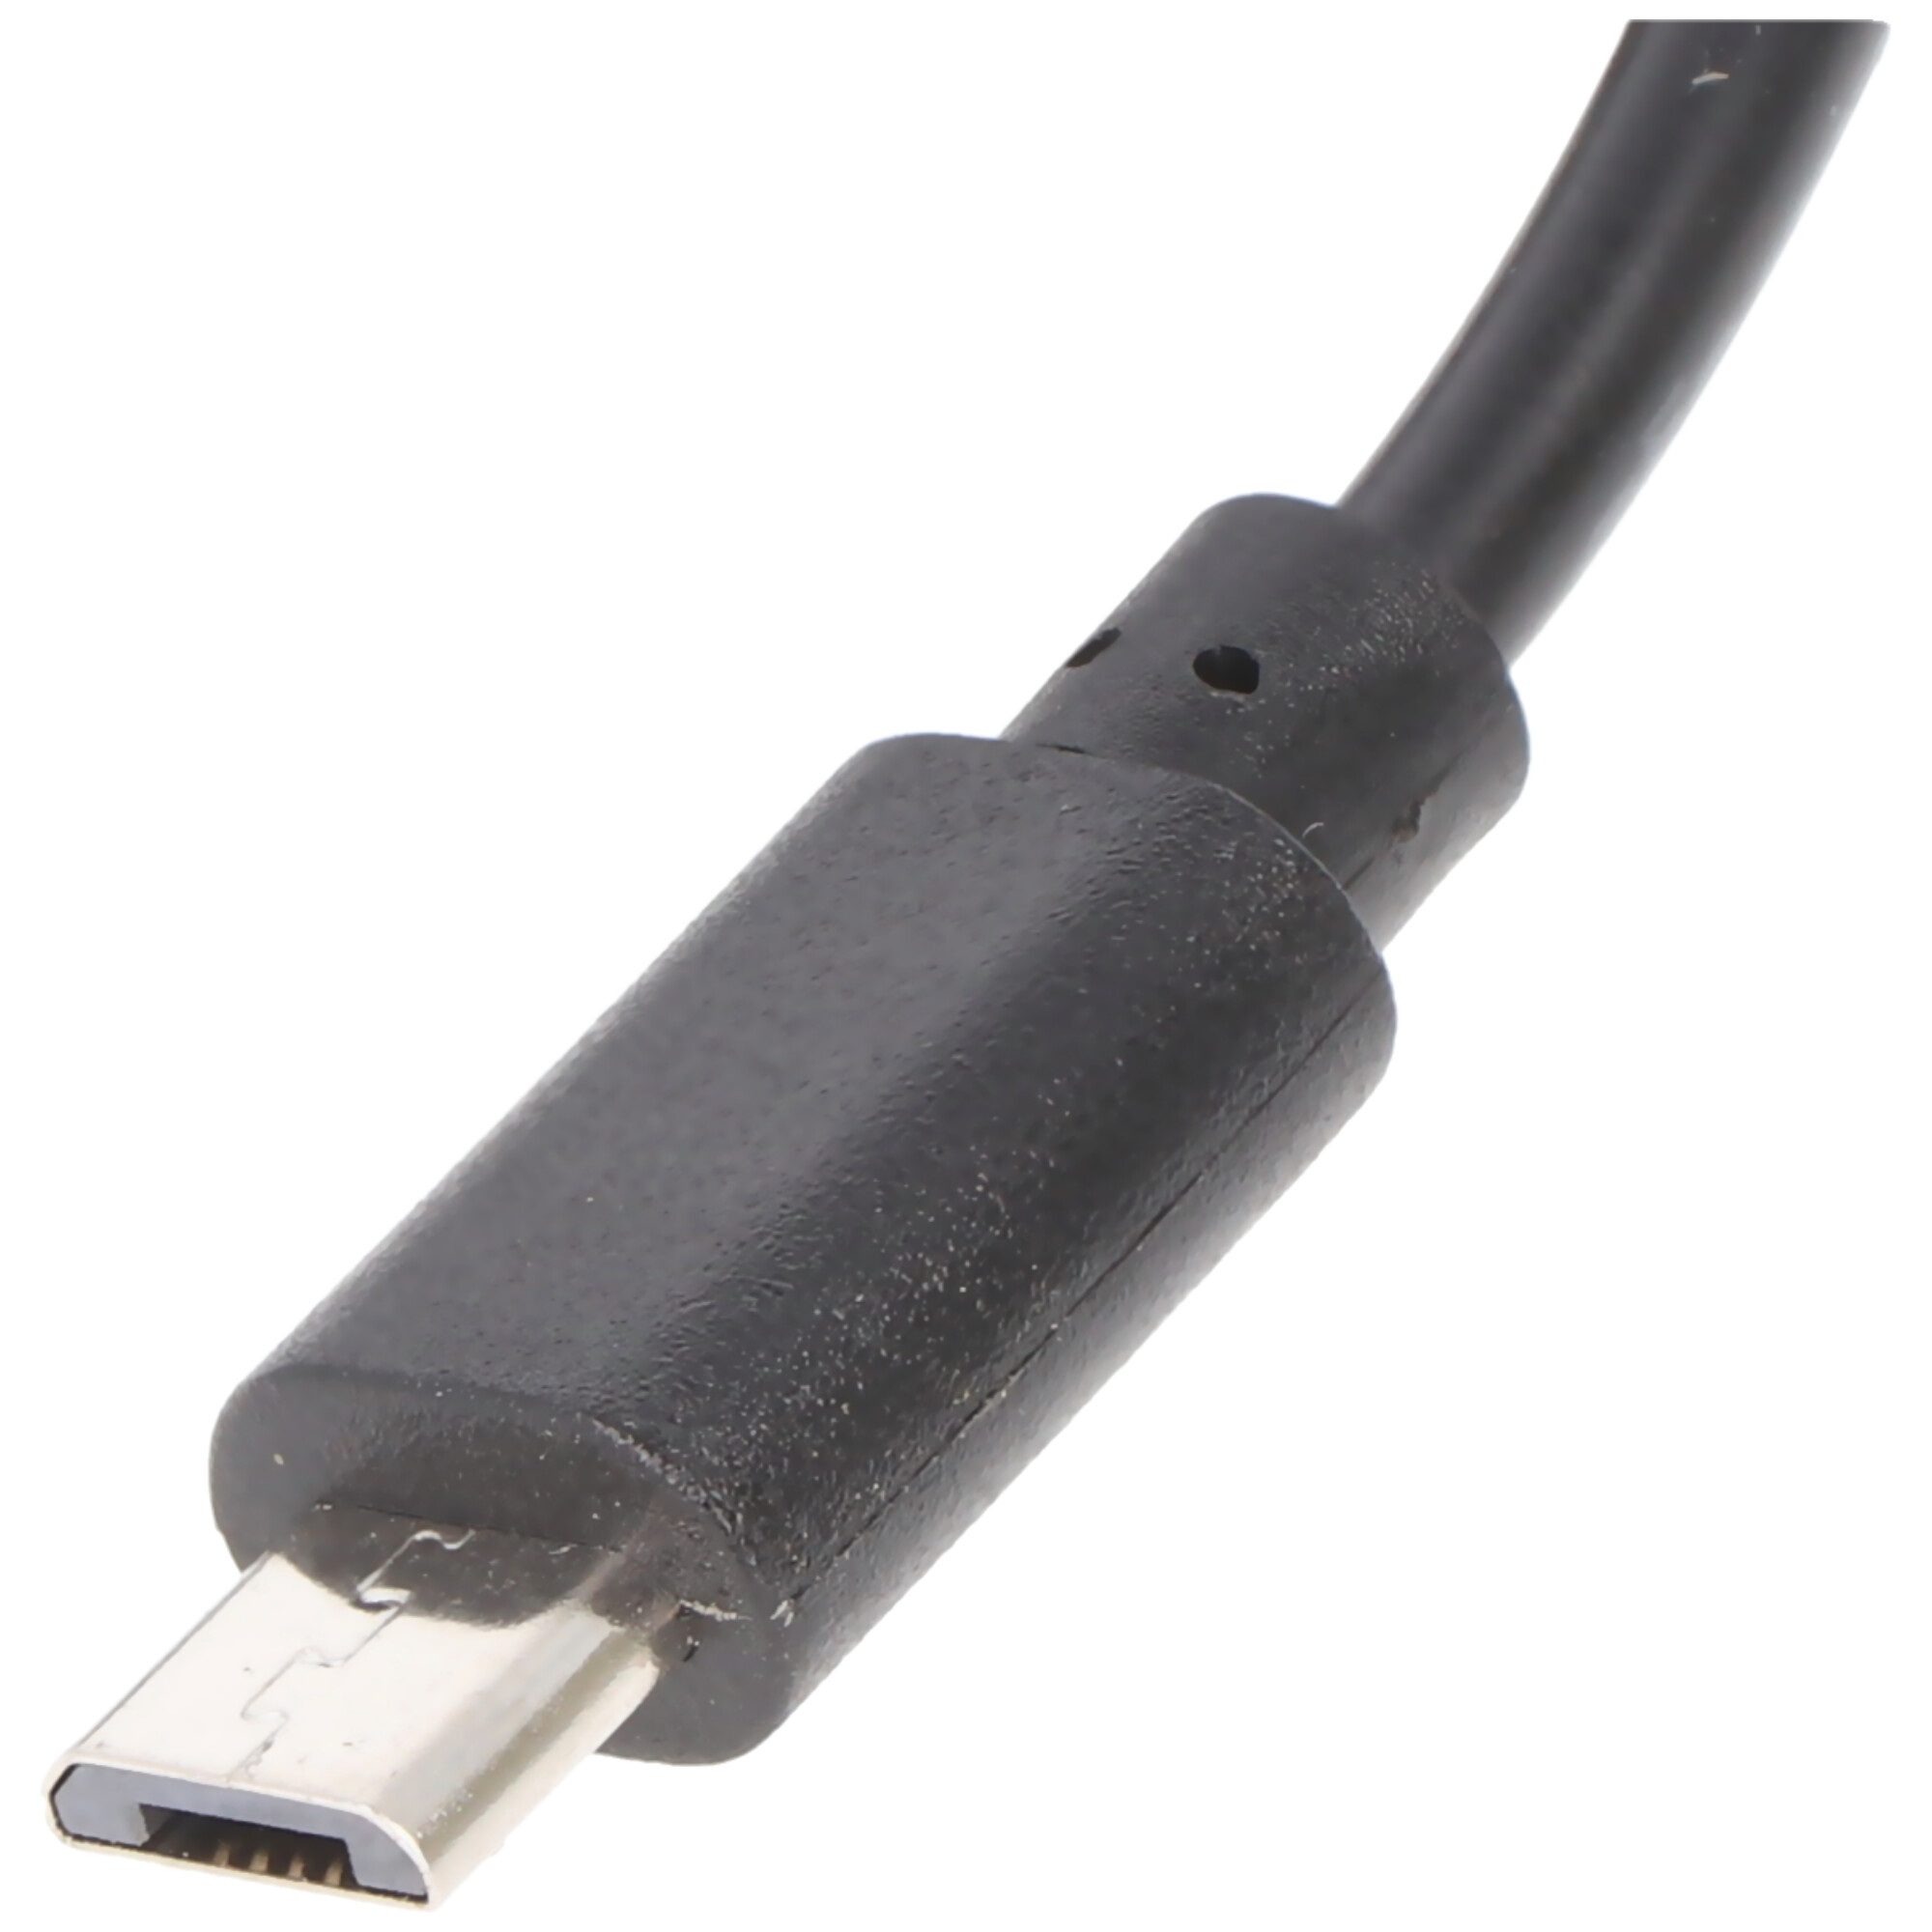 Ladegerät mit micro USB Stecker passend für Samsung Galaxy S2, S3, S4